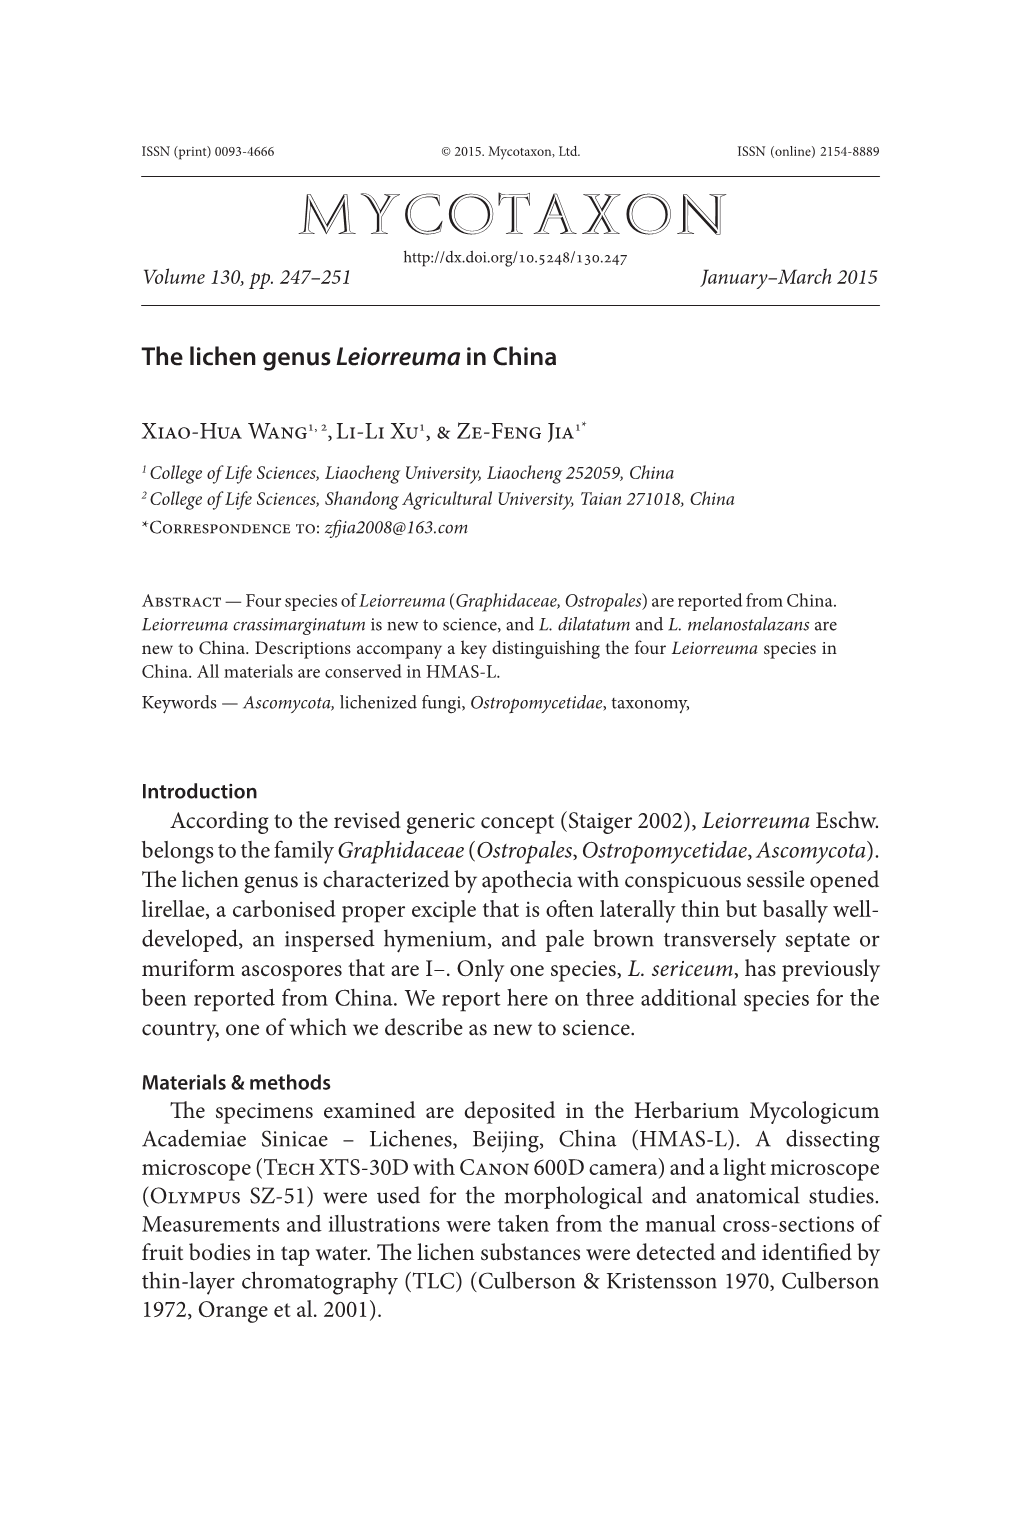 The Lichen Genus &lt;I&gt;Leiorreuma &lt;/I&gt; in China